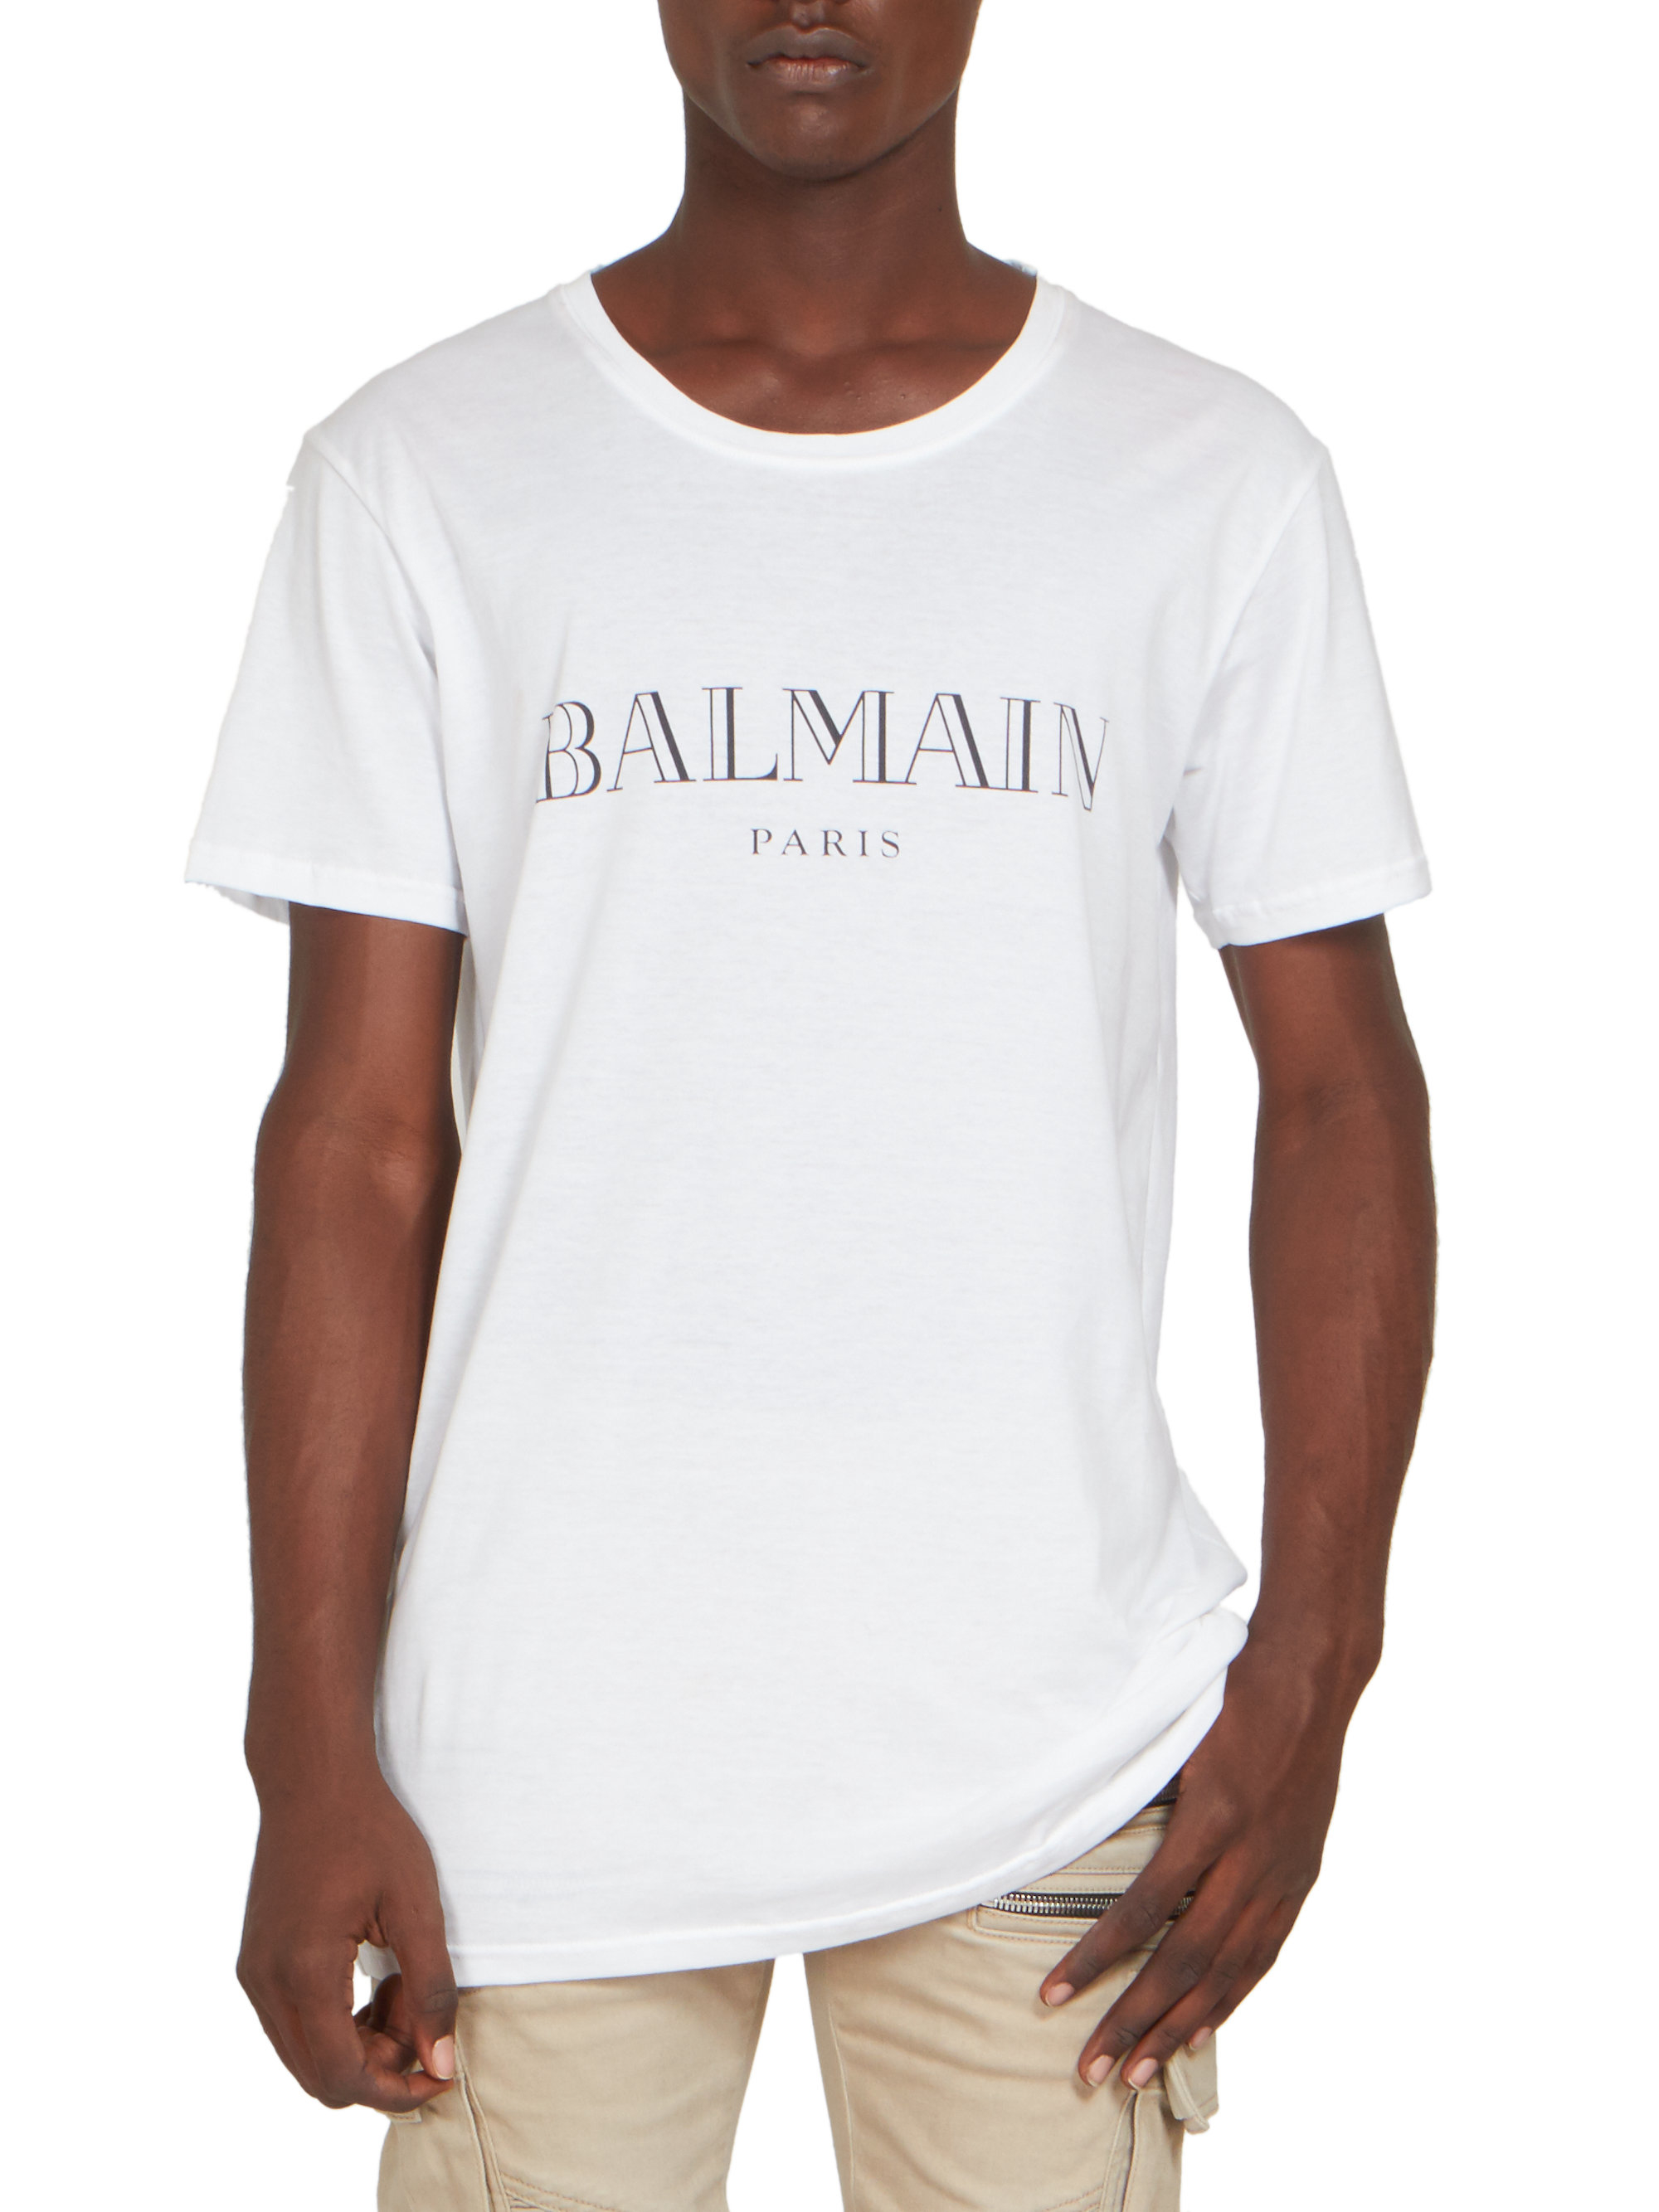 Lyst - Balmain Logo Tee in White for Men